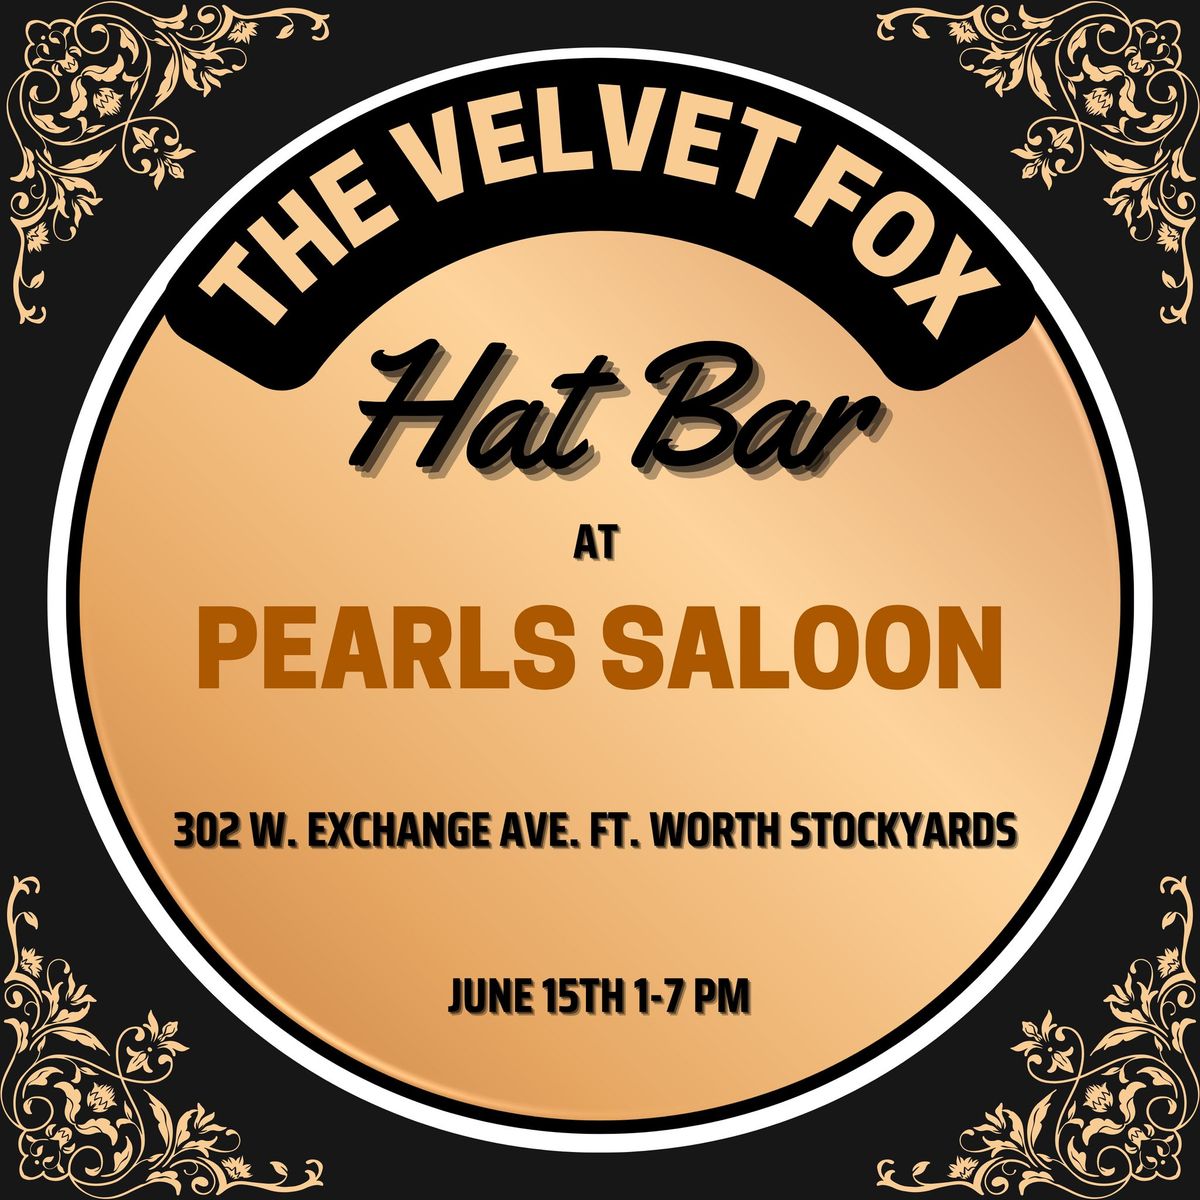 Hand Burned Hat Bar at Pearls Saloon